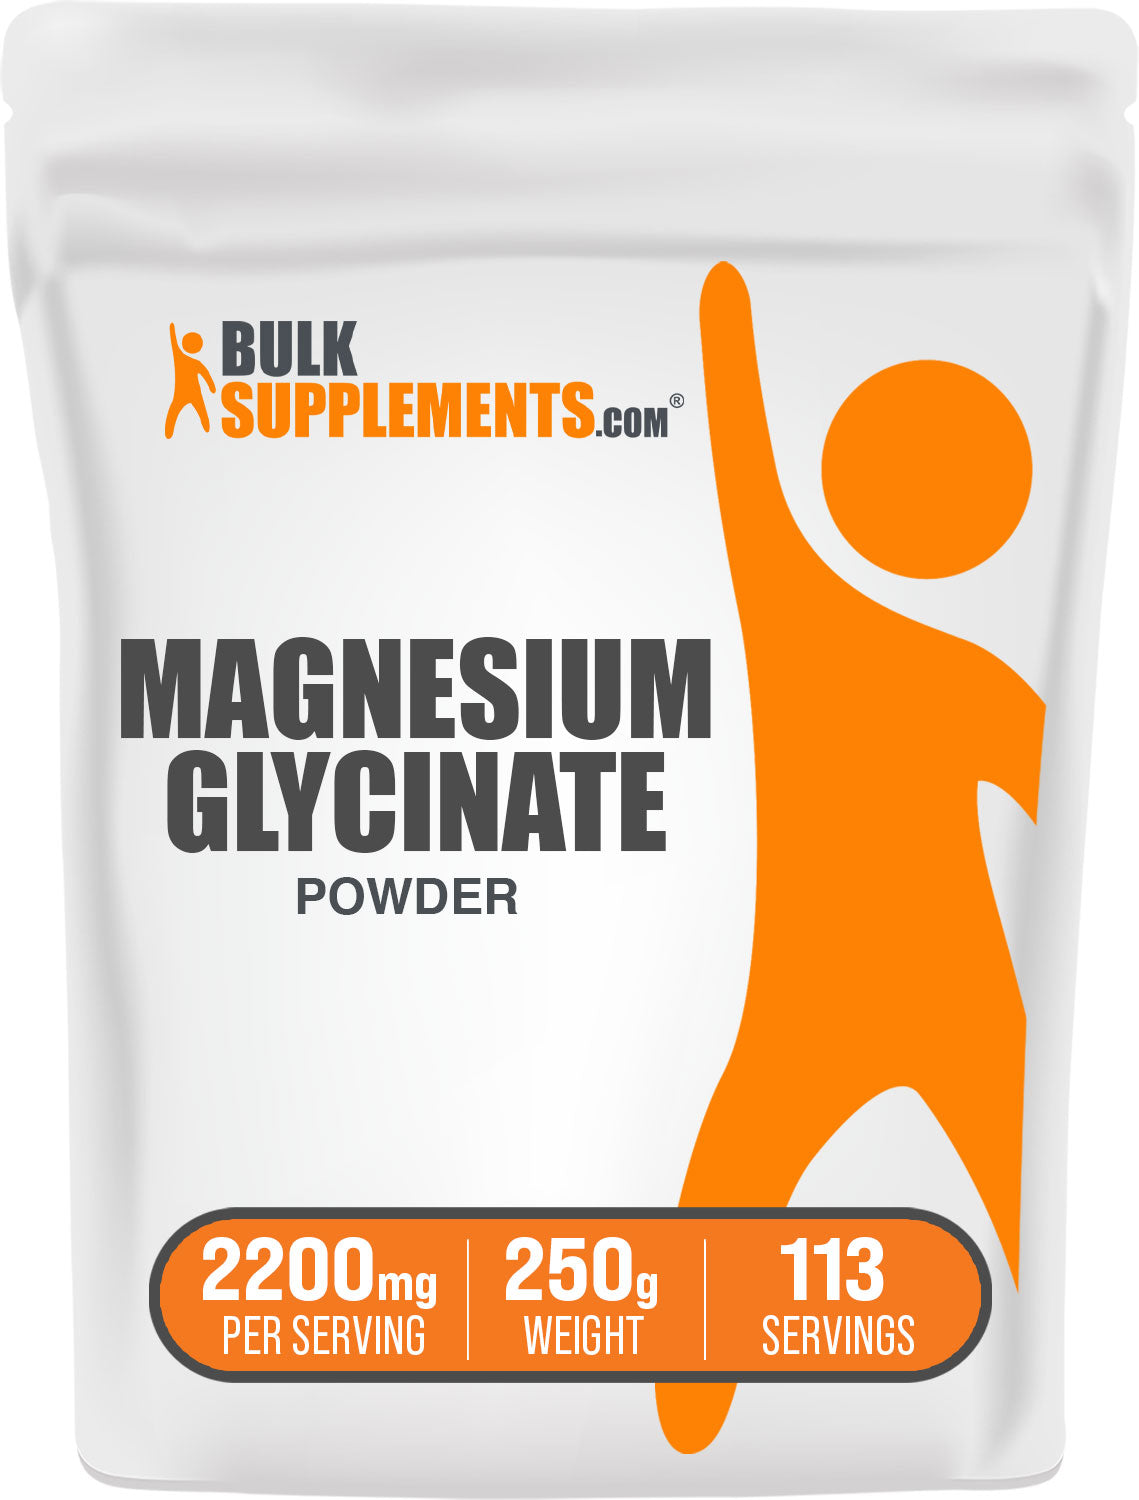 Magnesium glycinate pure magnesium glycinate 250g bag